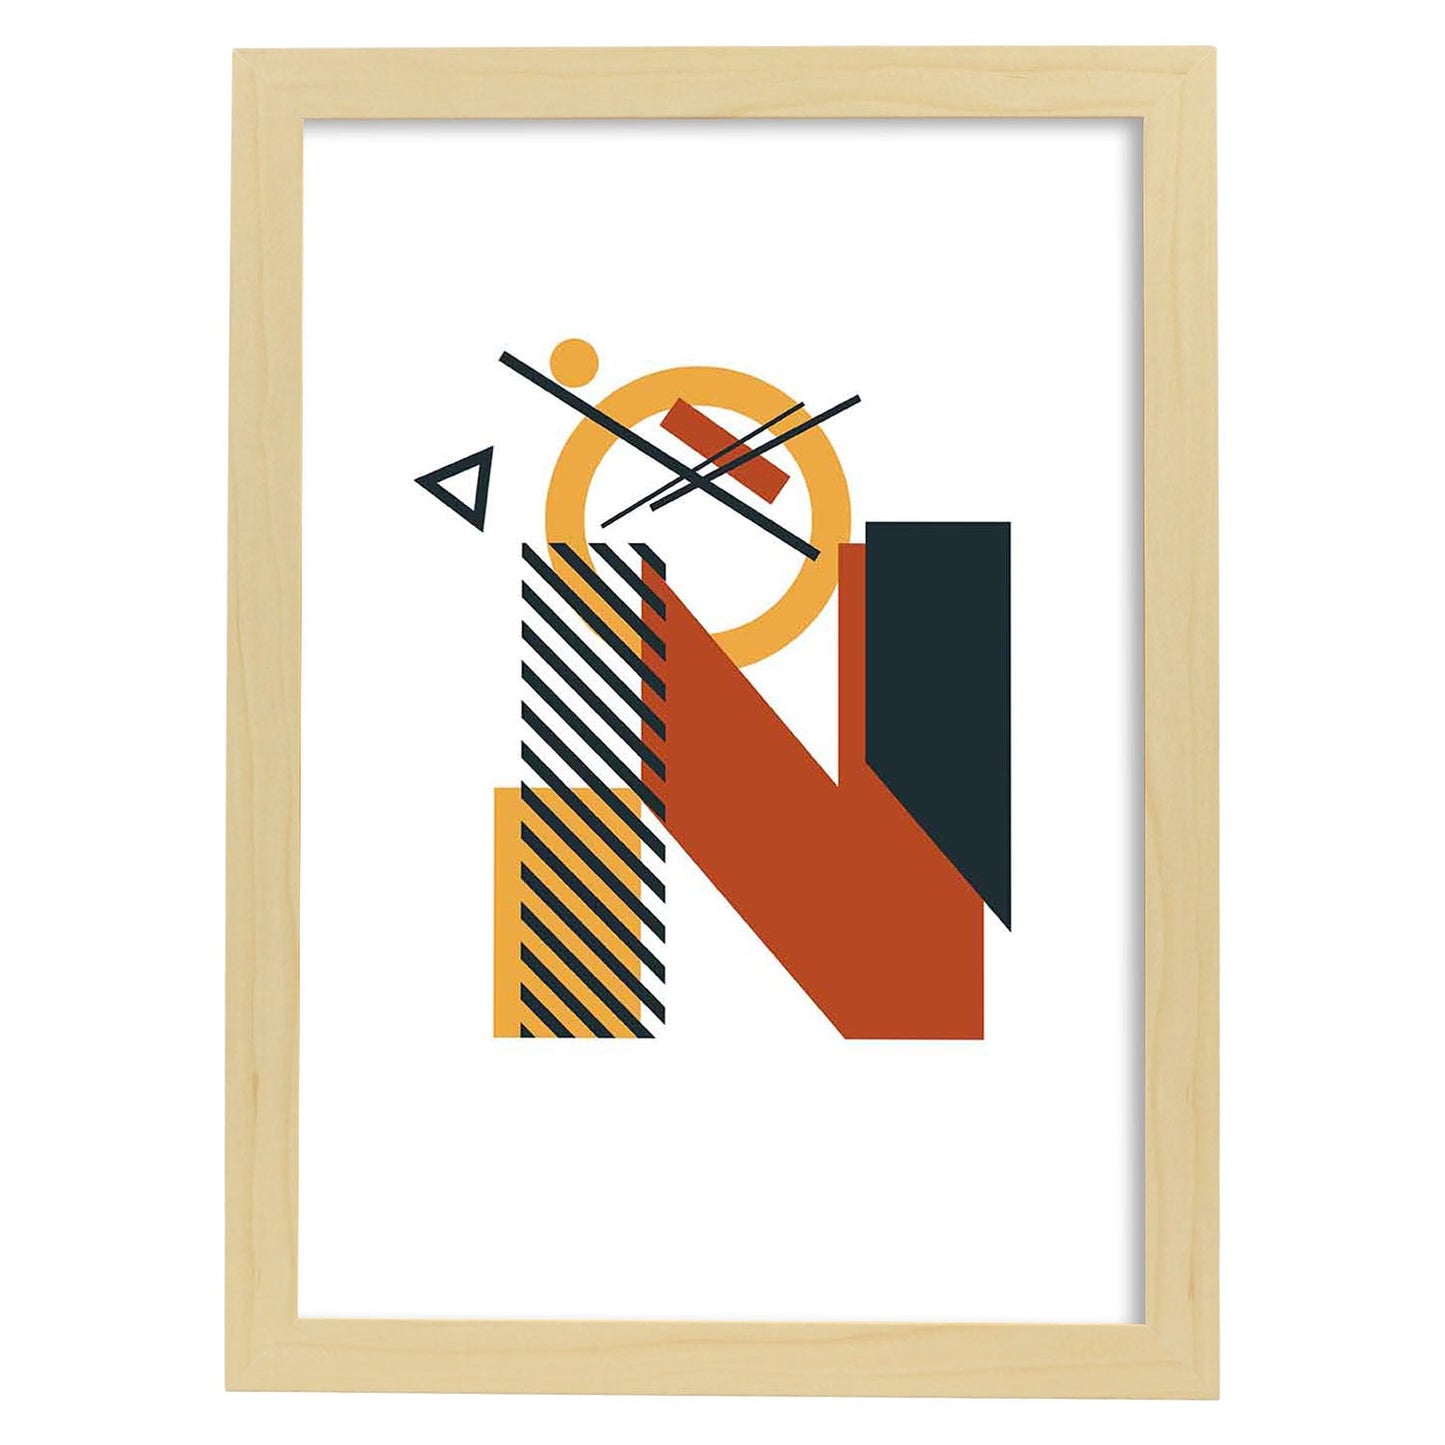 Poster de letra N. Lámina estilo Geometria con formas con imágenes del alfabeto.-Artwork-Nacnic-A4-Marco Madera clara-Nacnic Estudio SL